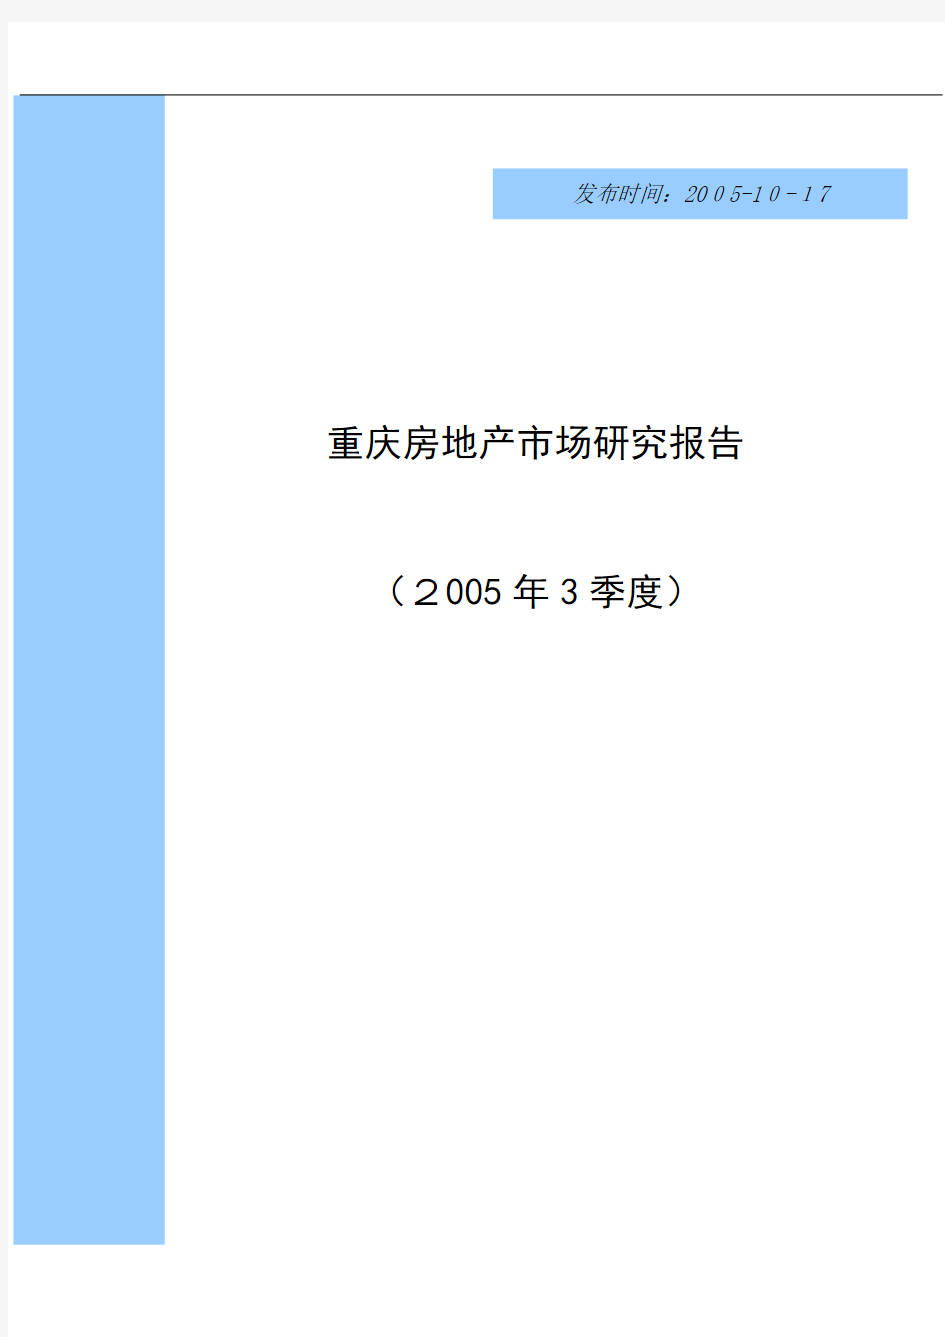 重庆房地产市场研究分析报告